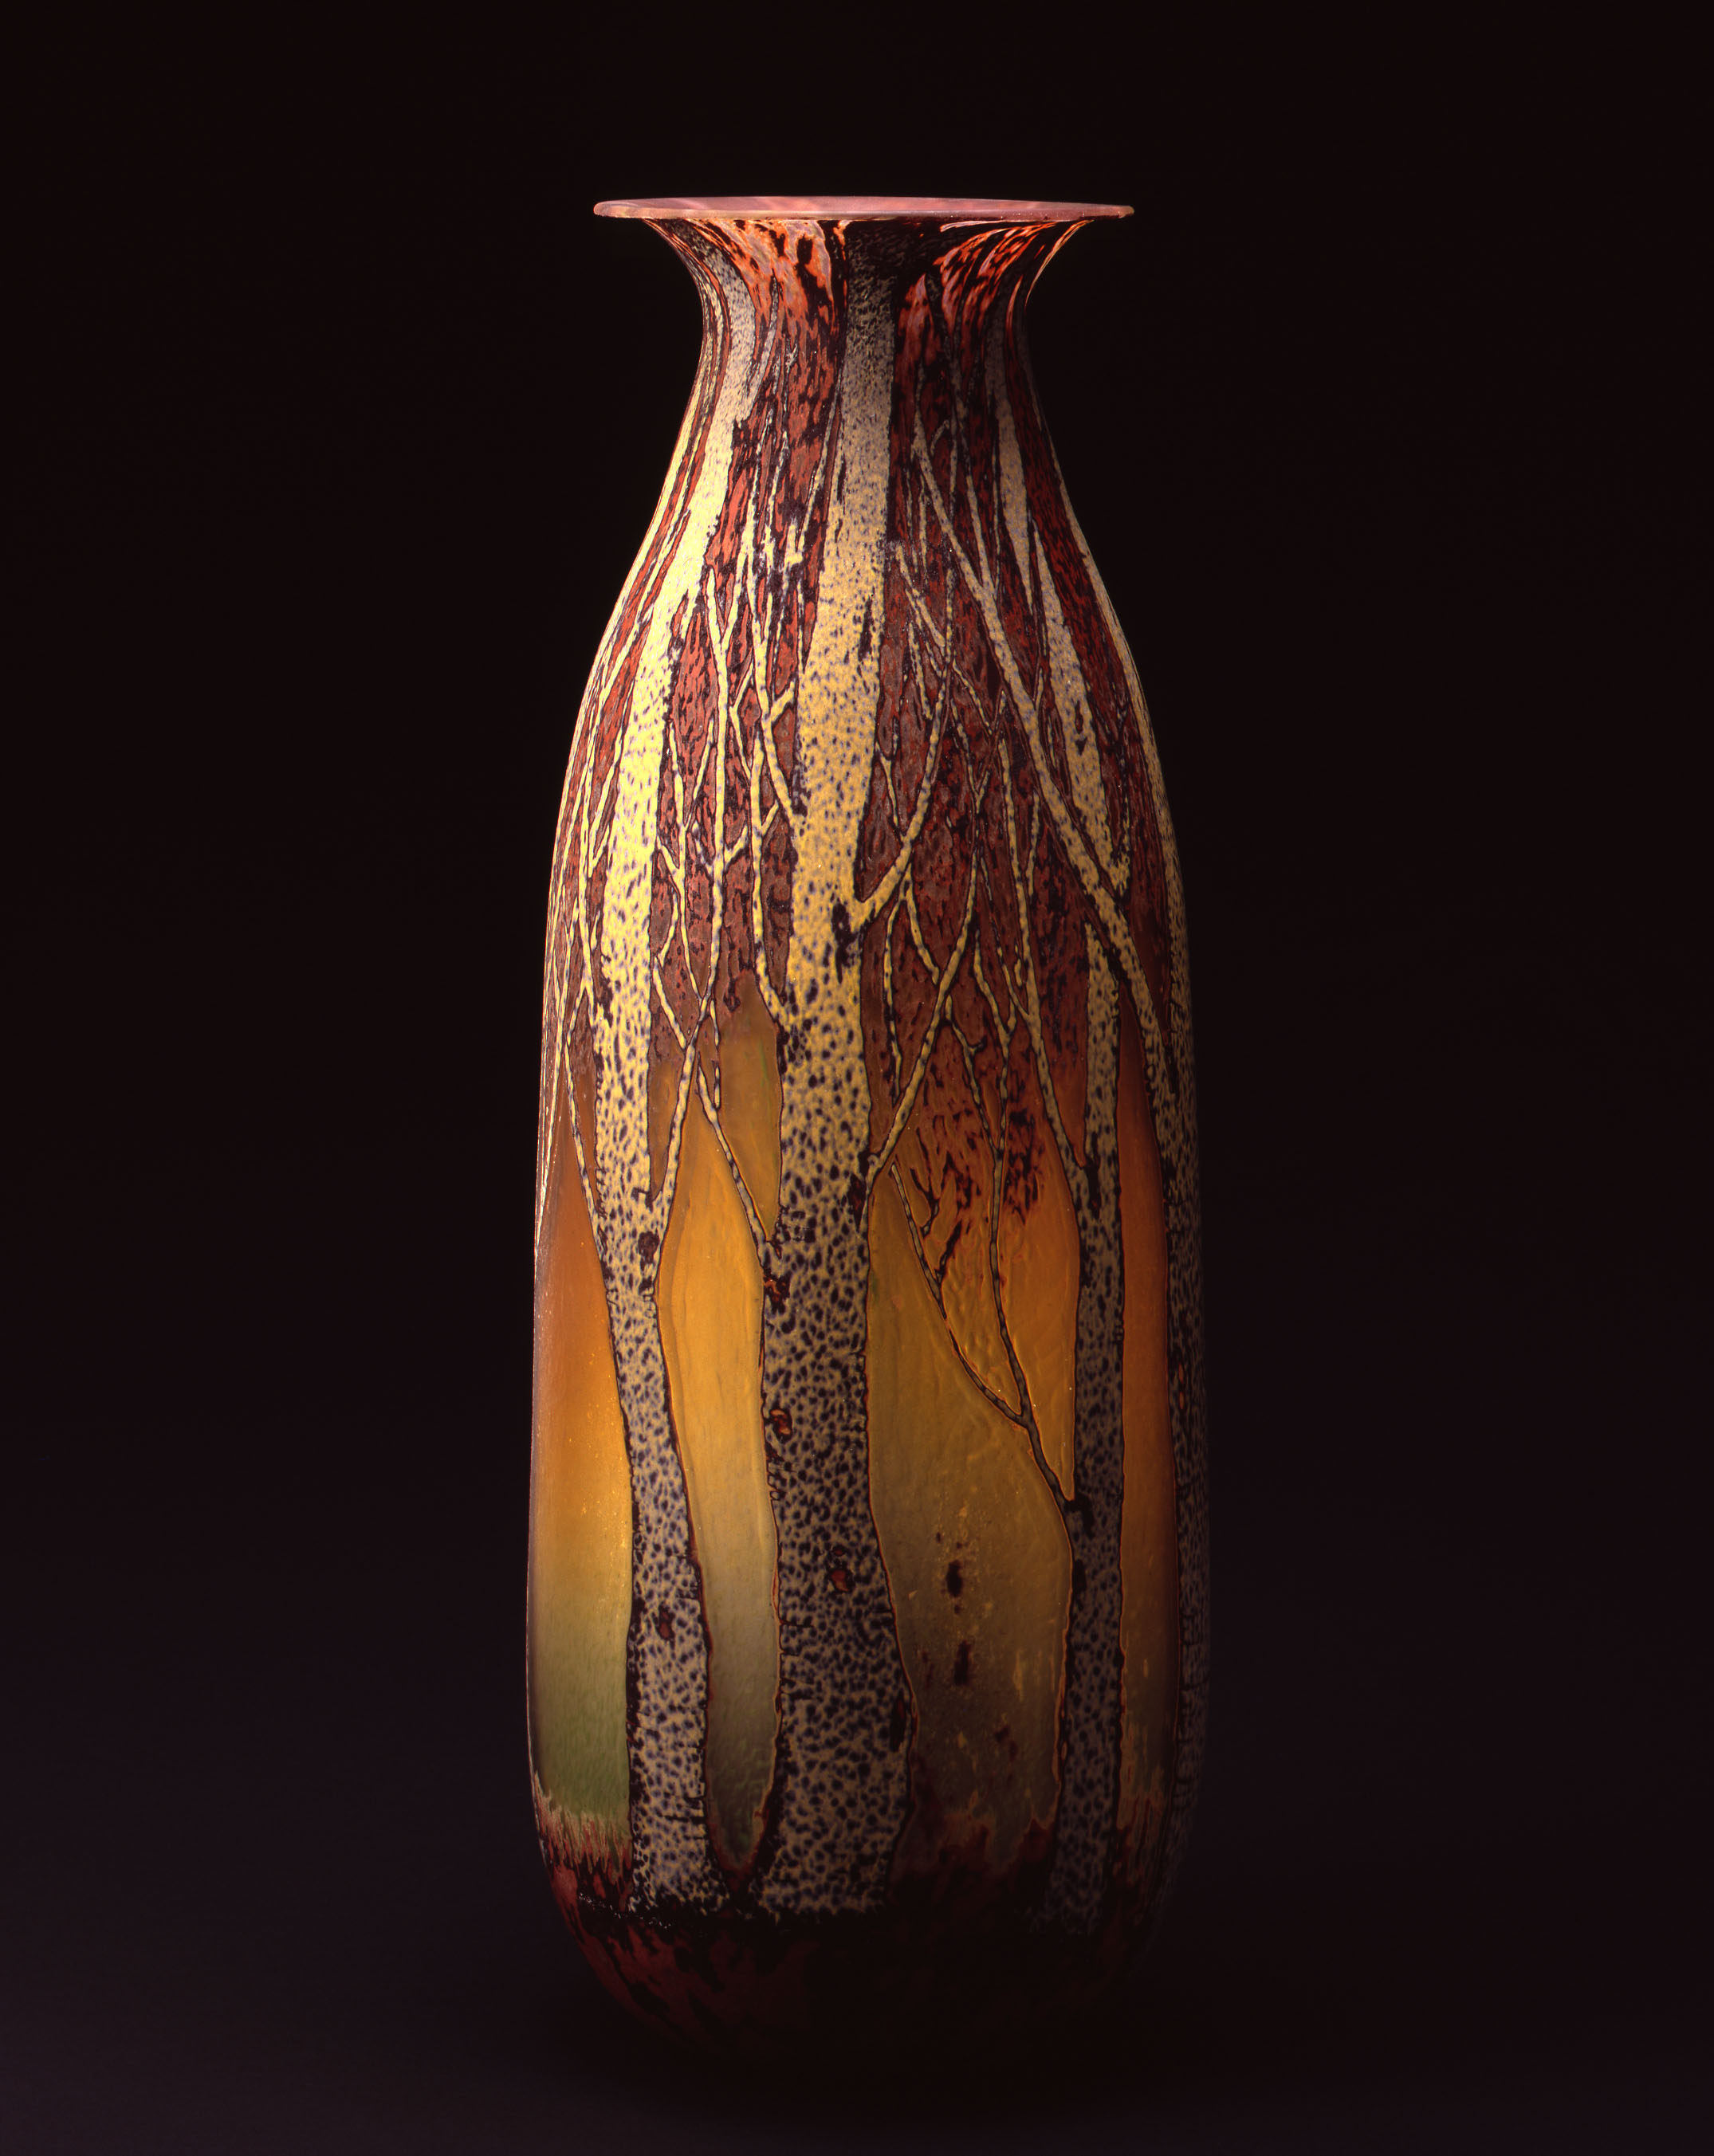  William Morris,&nbsp; Vase with Aspen Tree Grove  &nbsp; (2004, glass,26 1/2 x 10 x 10 inches), WM.32 